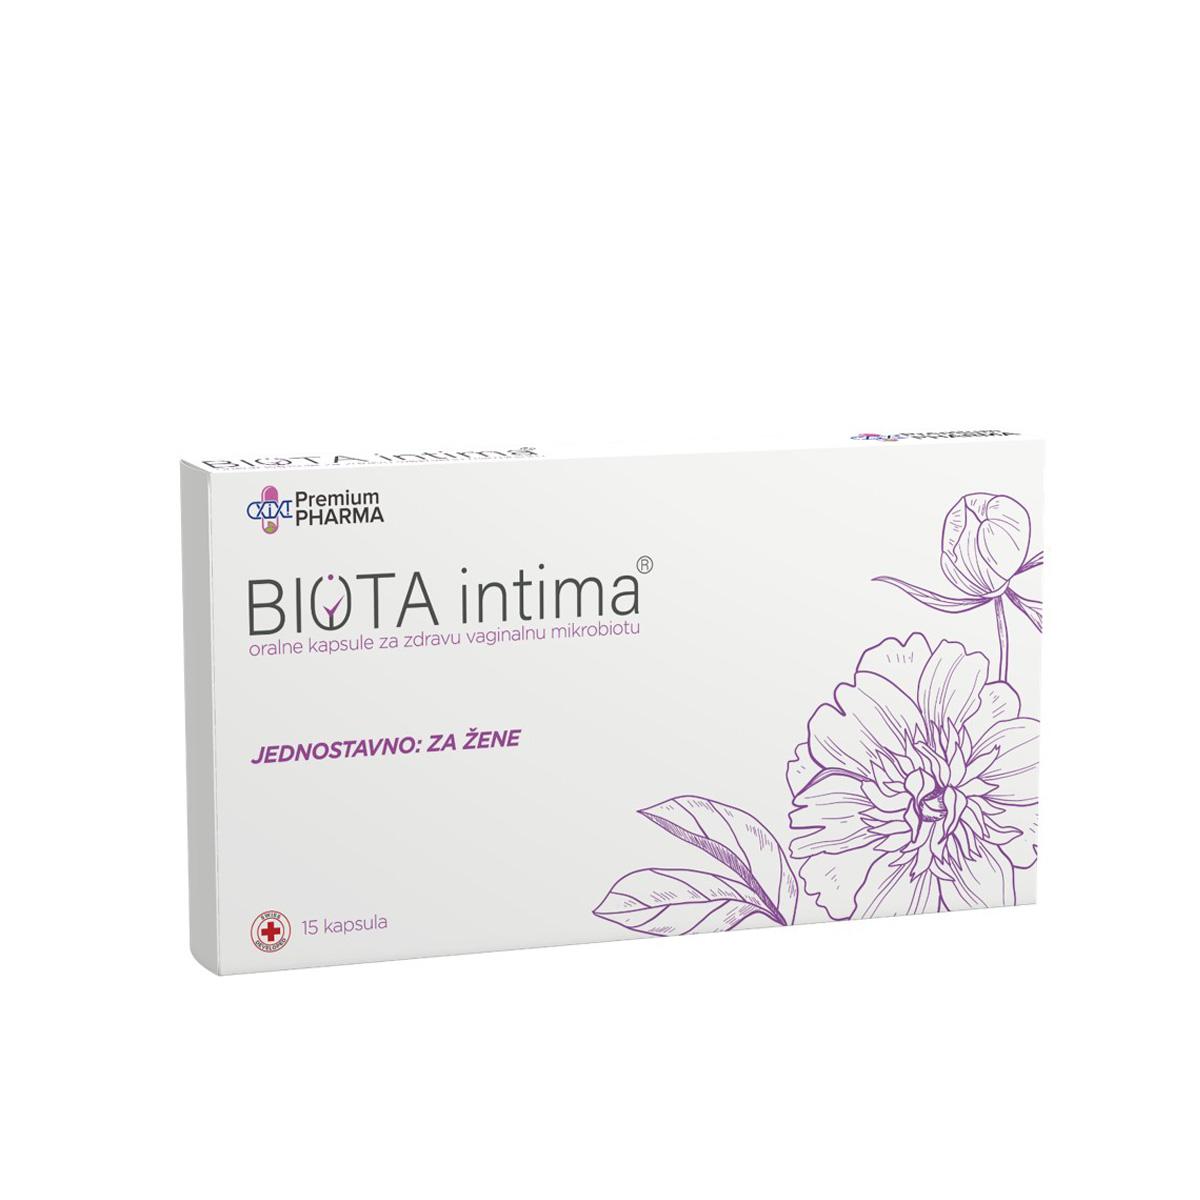 PREMIUM PHARMA Kompleks za zdravu vaginalnu mikrobiotBiota Intima 15 kapsula